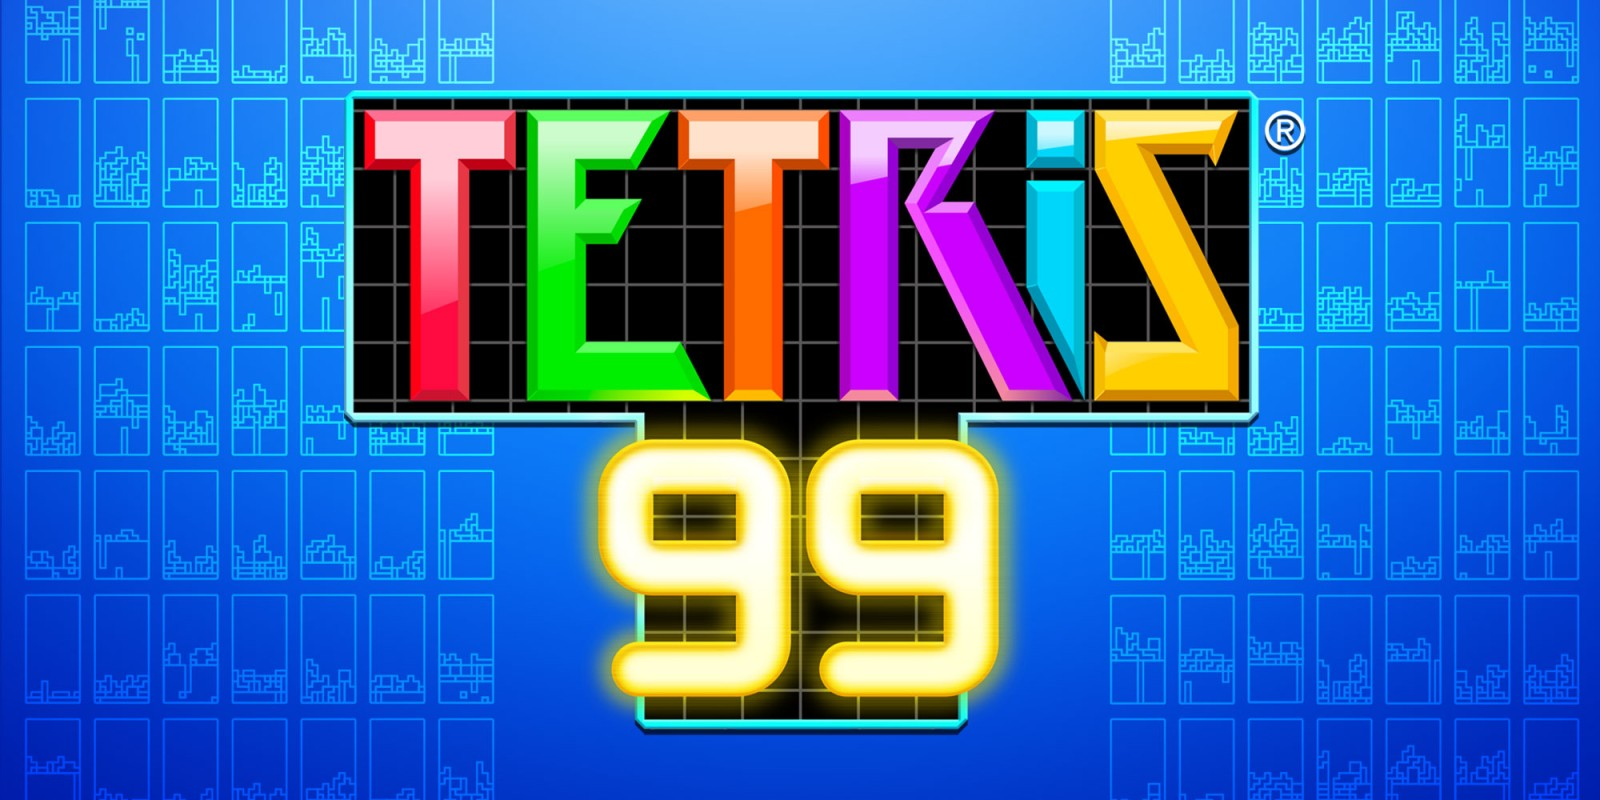 《Tetris:99》俄罗斯方块吃鸡从入门到进阶